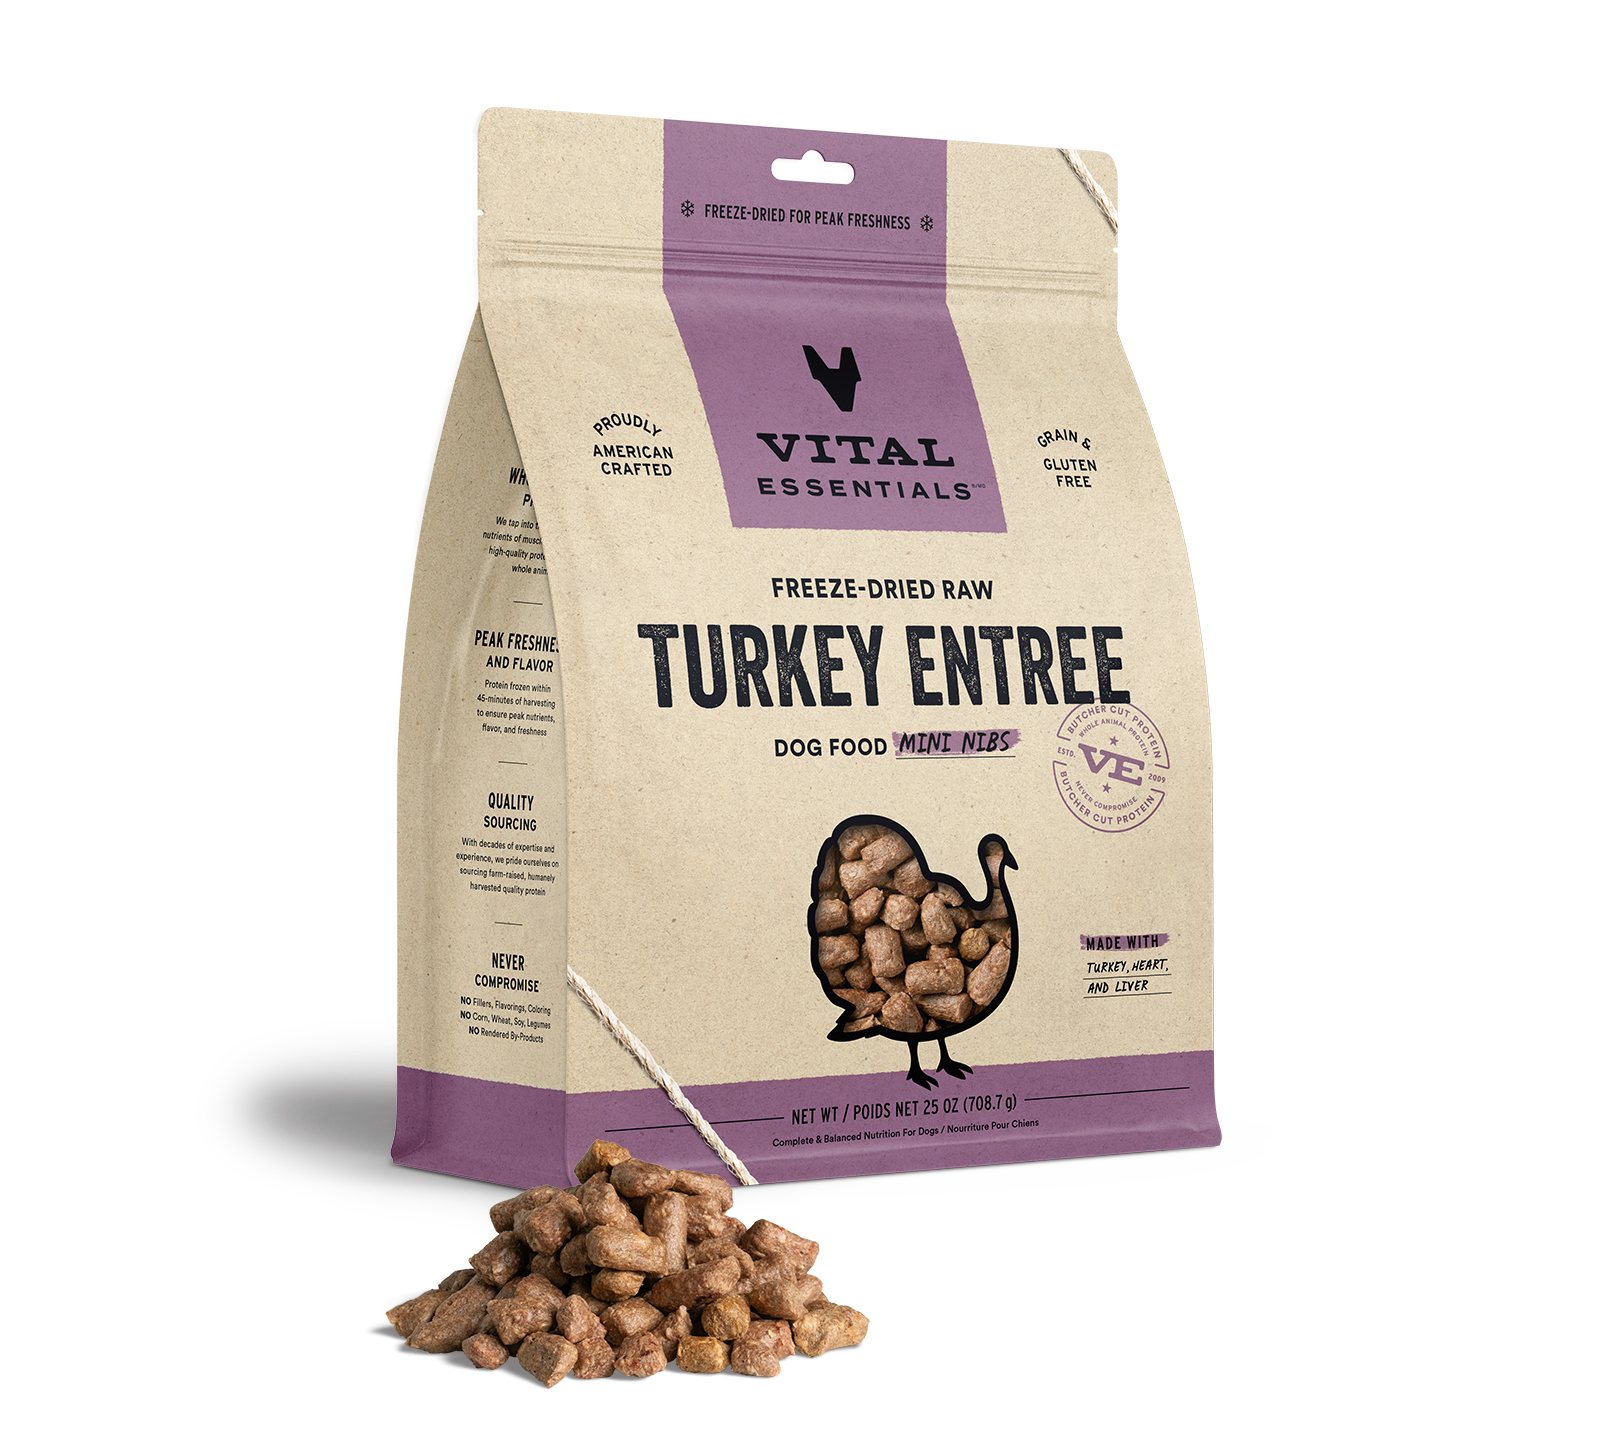 Vital Essentials Freeze-Dried Raw Turkey Entree Dog Food Mini Nibs, 25 oz - Health/First Aid